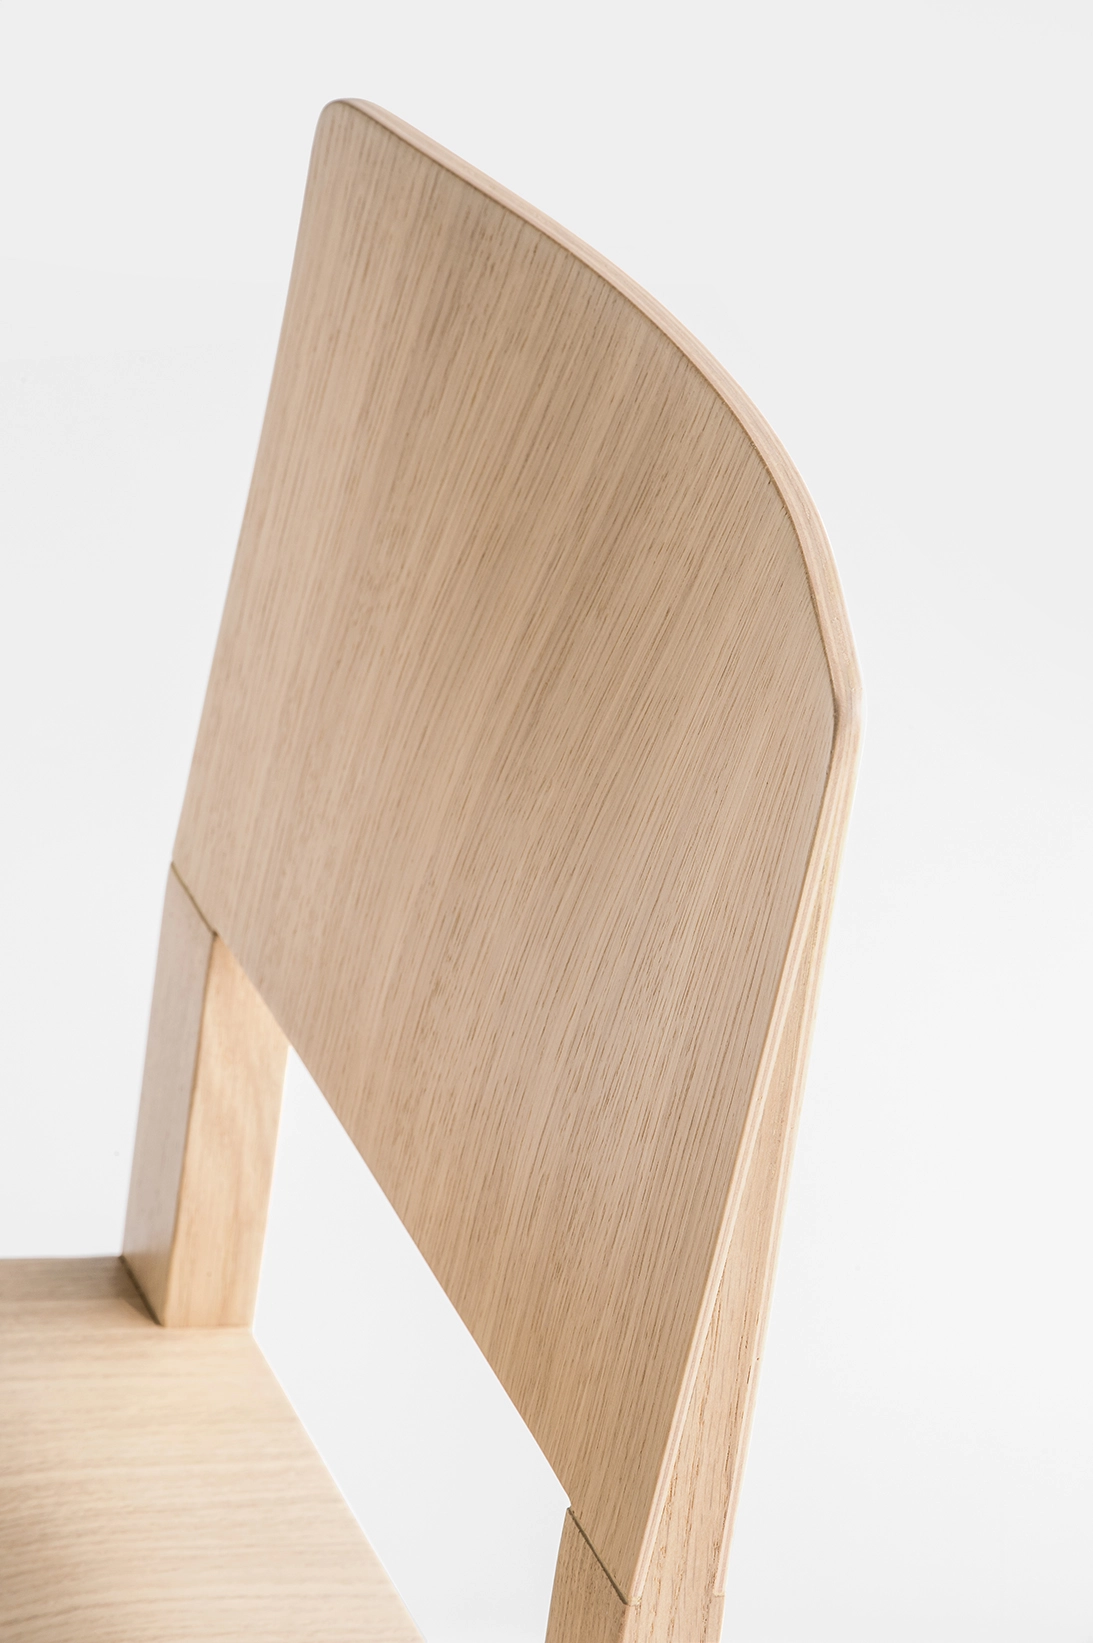 Stuhl BRERA 380 - Holz von Pedrali BI - weiss lackiert